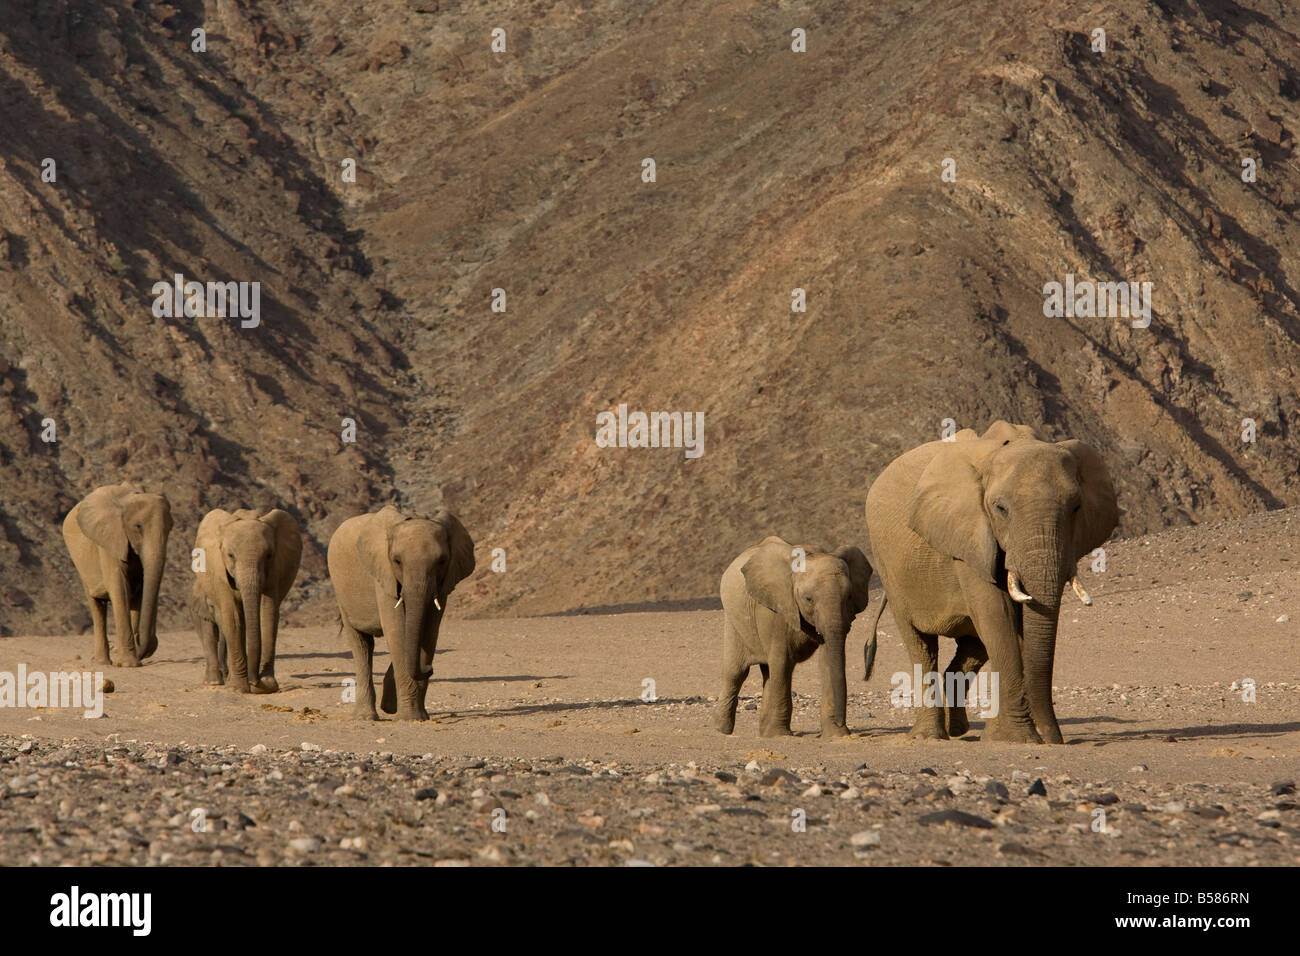 Troupeau de désert de l'elephant (Loxodonta africana africana), Namibie, Afrique Banque D'Images